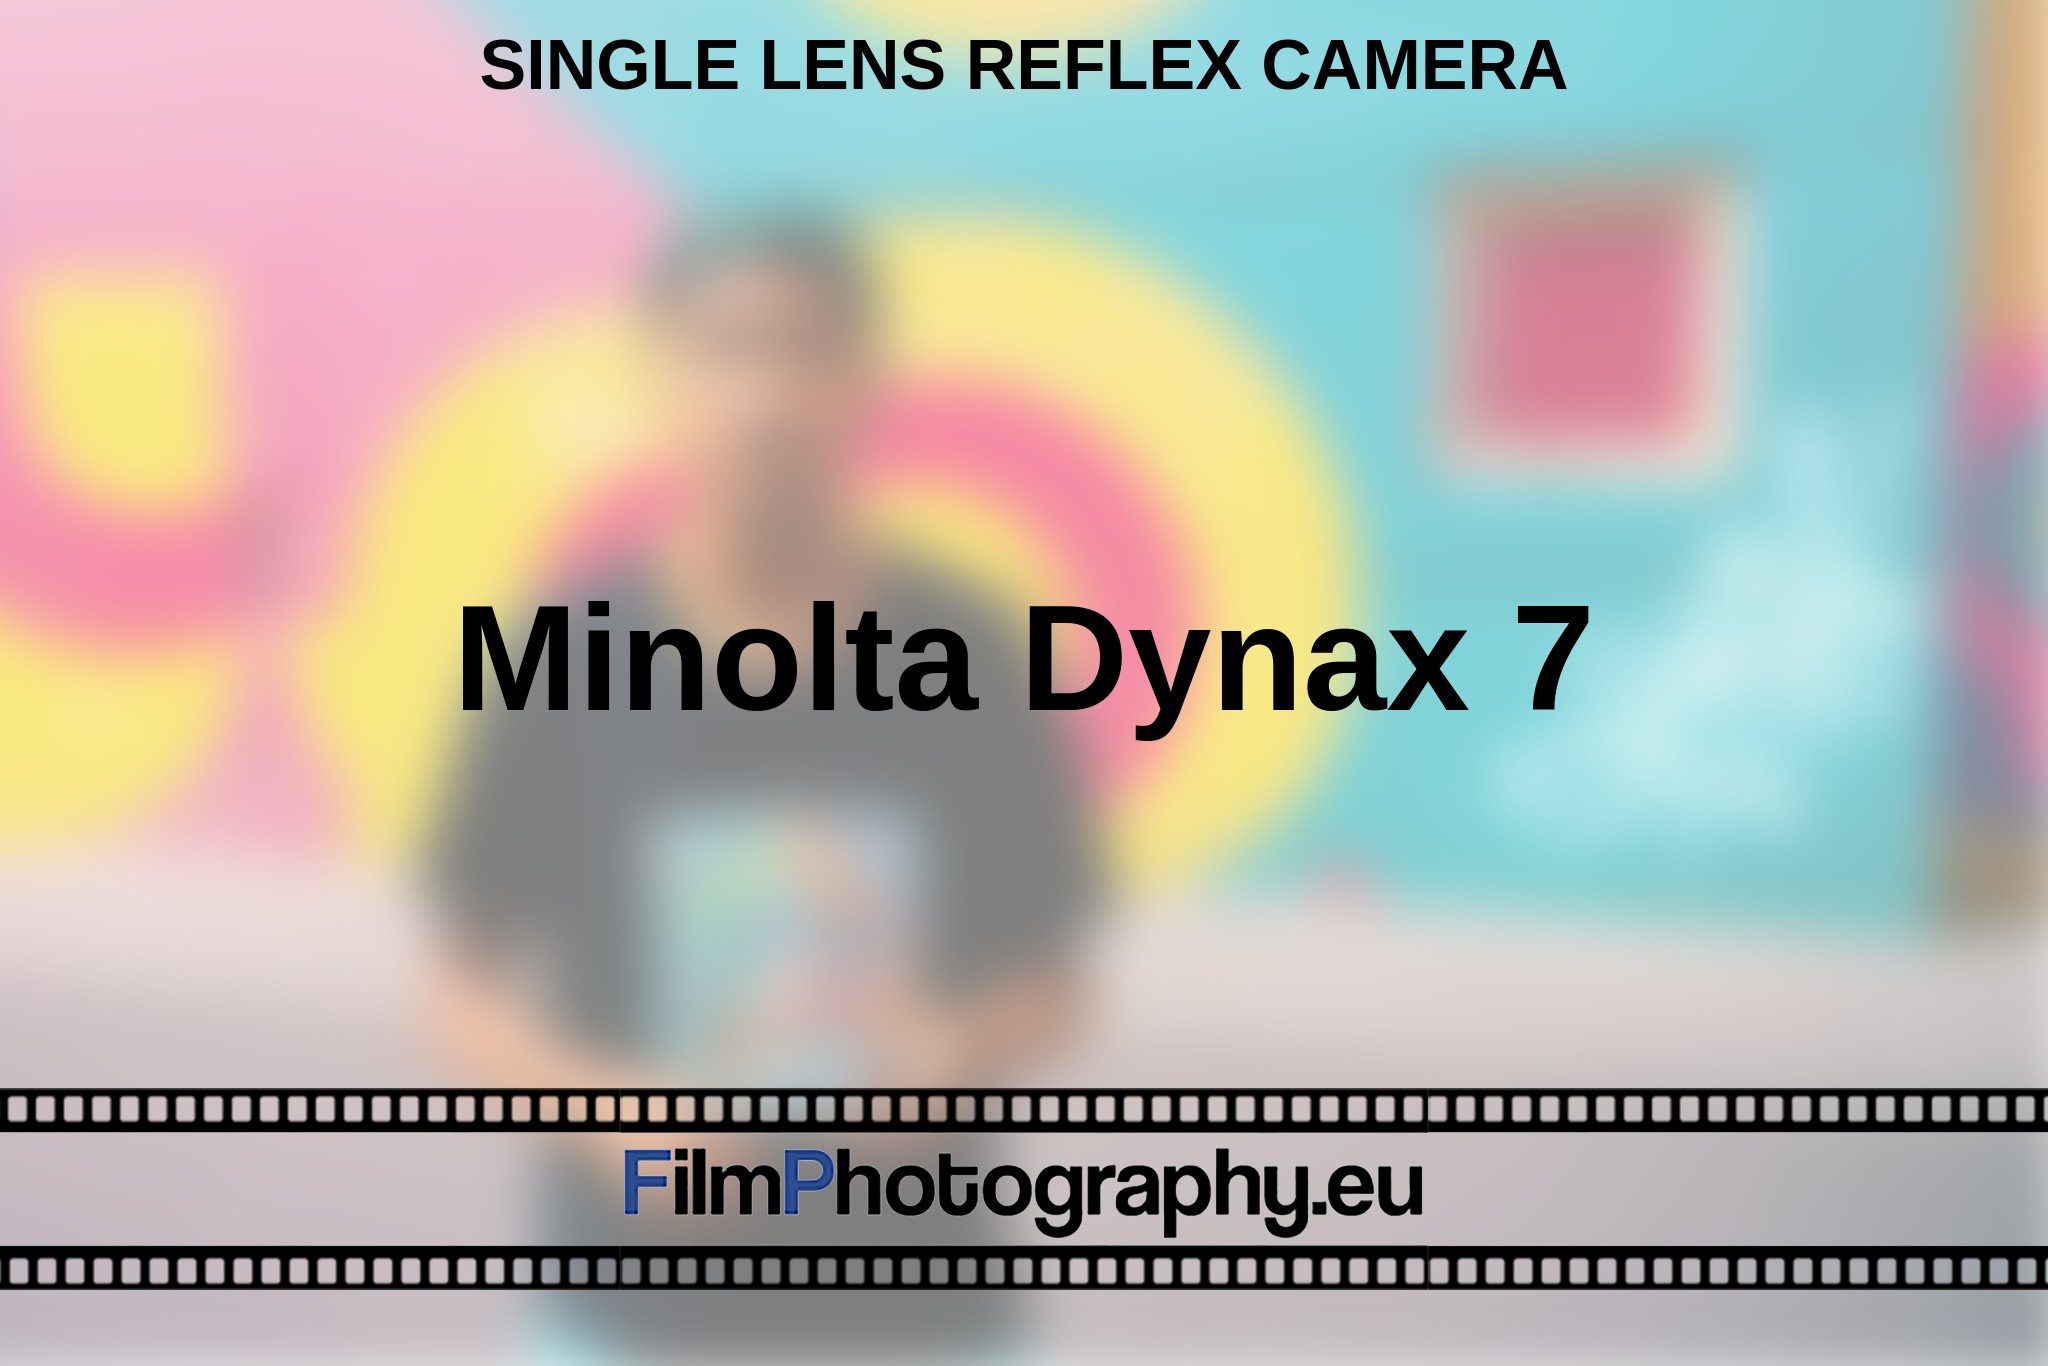 minolta-dynax-7-single-lens-reflex-camera-en-bnv.jpg